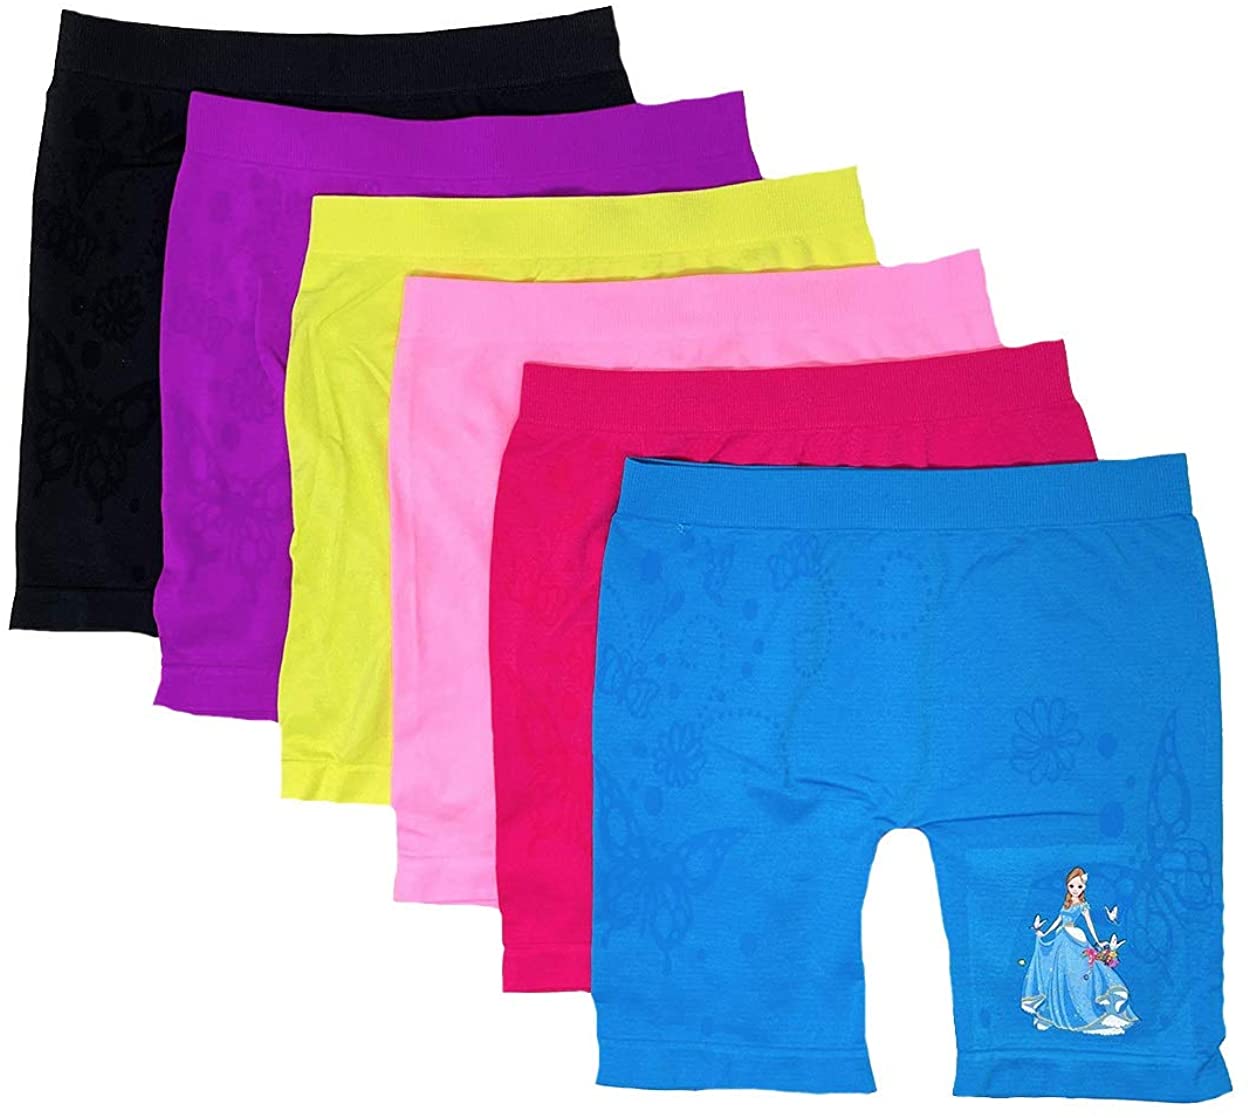  6 Pack Dance Shorts Under Dress Girls Bike Short for